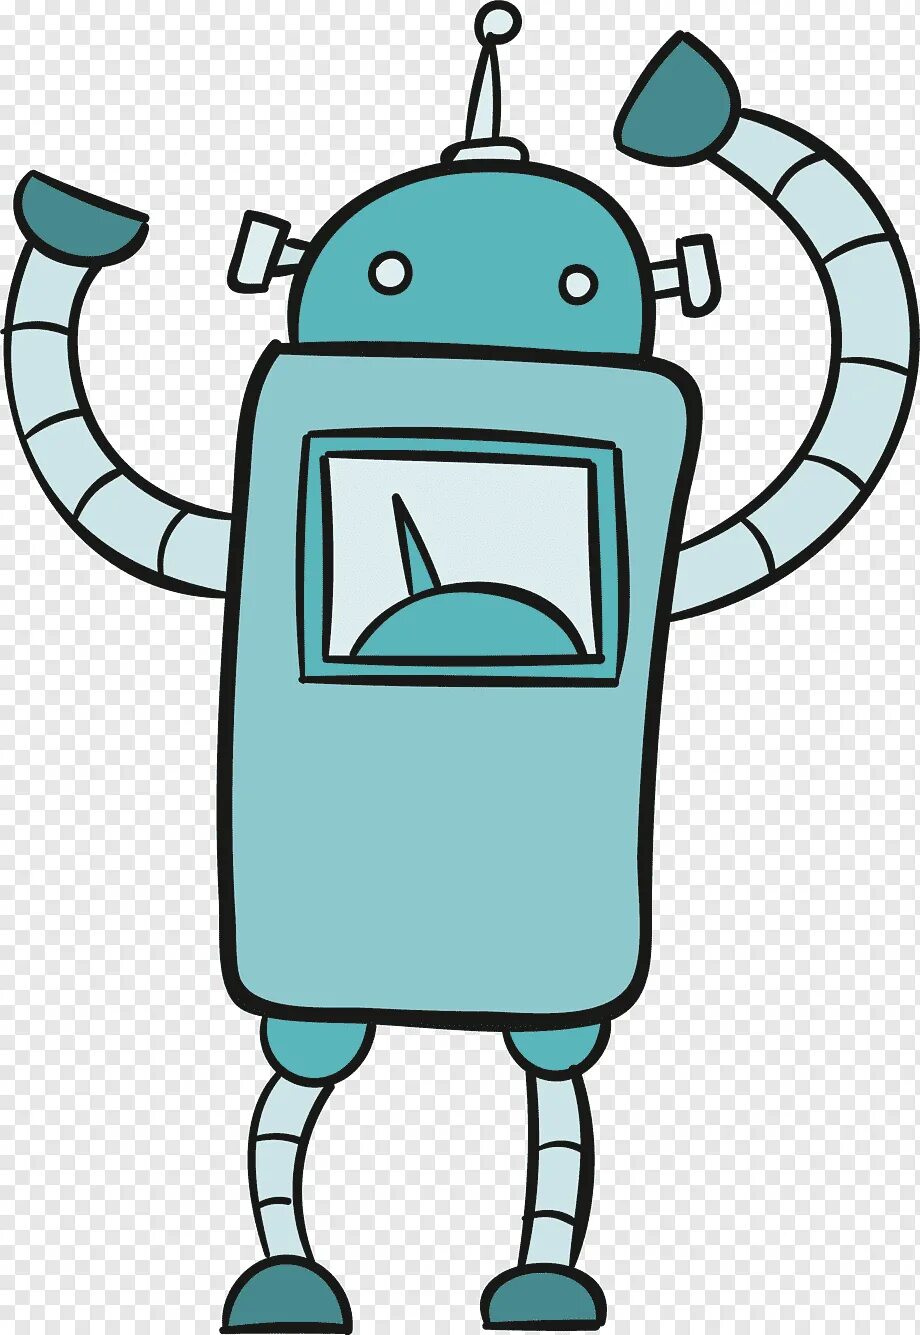 Robots cartoon. Робот мультяшный. Робот из мультика. Робот мультяшный зеленый. Робот векторный рисунок.